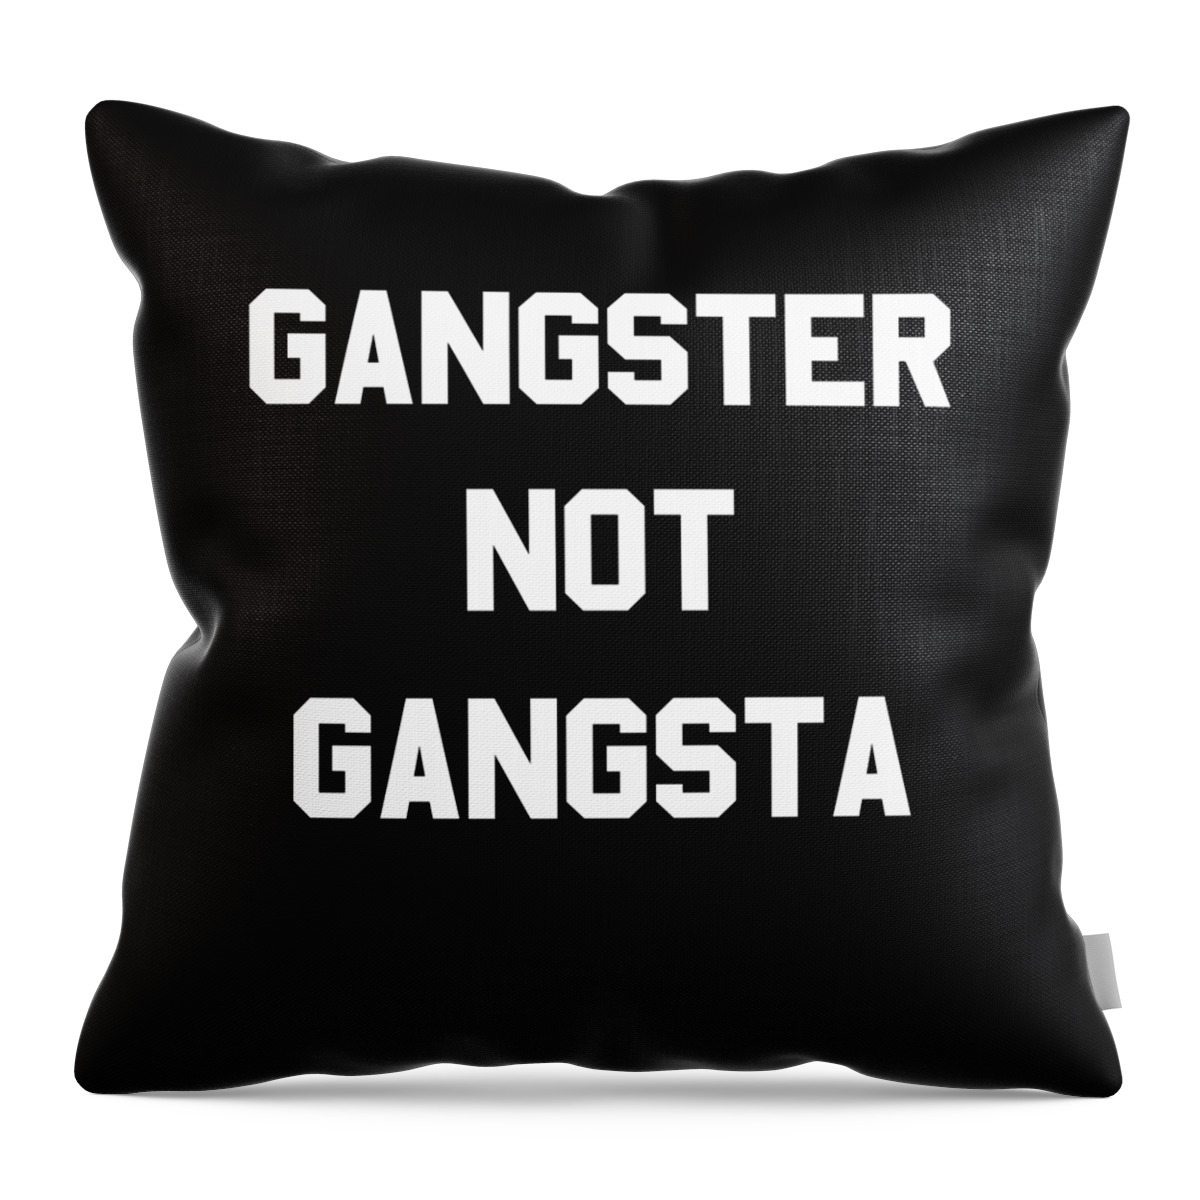 Funny Throw Pillow featuring the digital art Gangster Not Gangsta by Flippin Sweet Gear